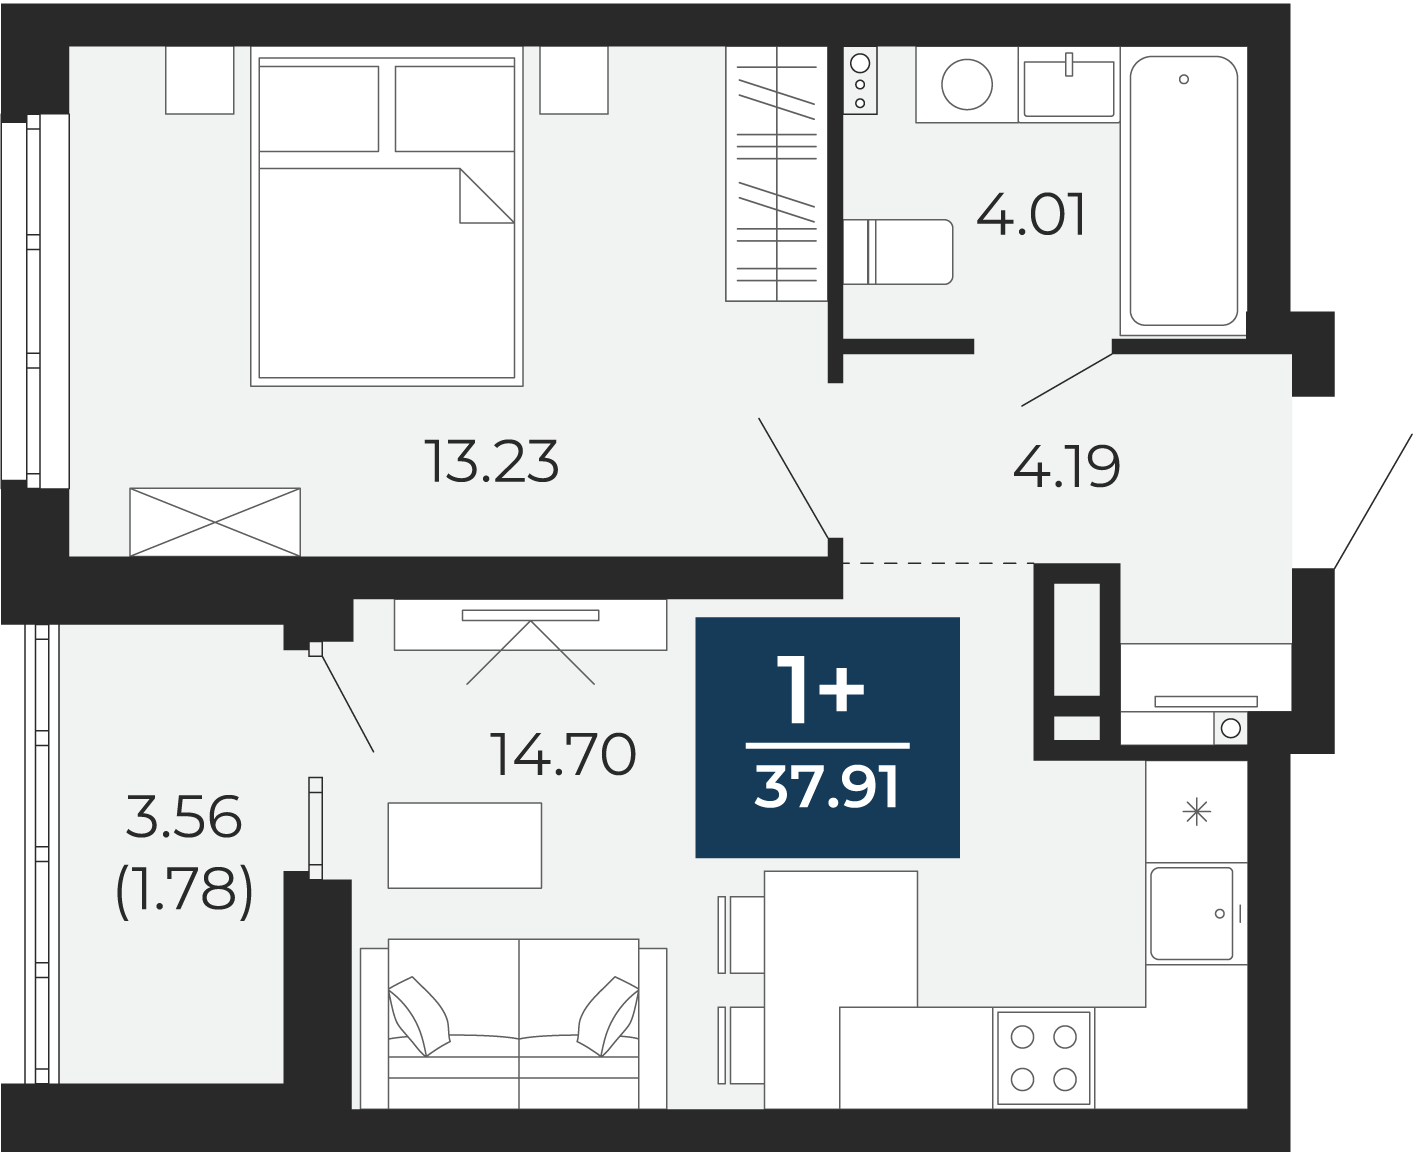 Квартира № 137, 1-комнатная, 37.91 кв. м, 14 этаж